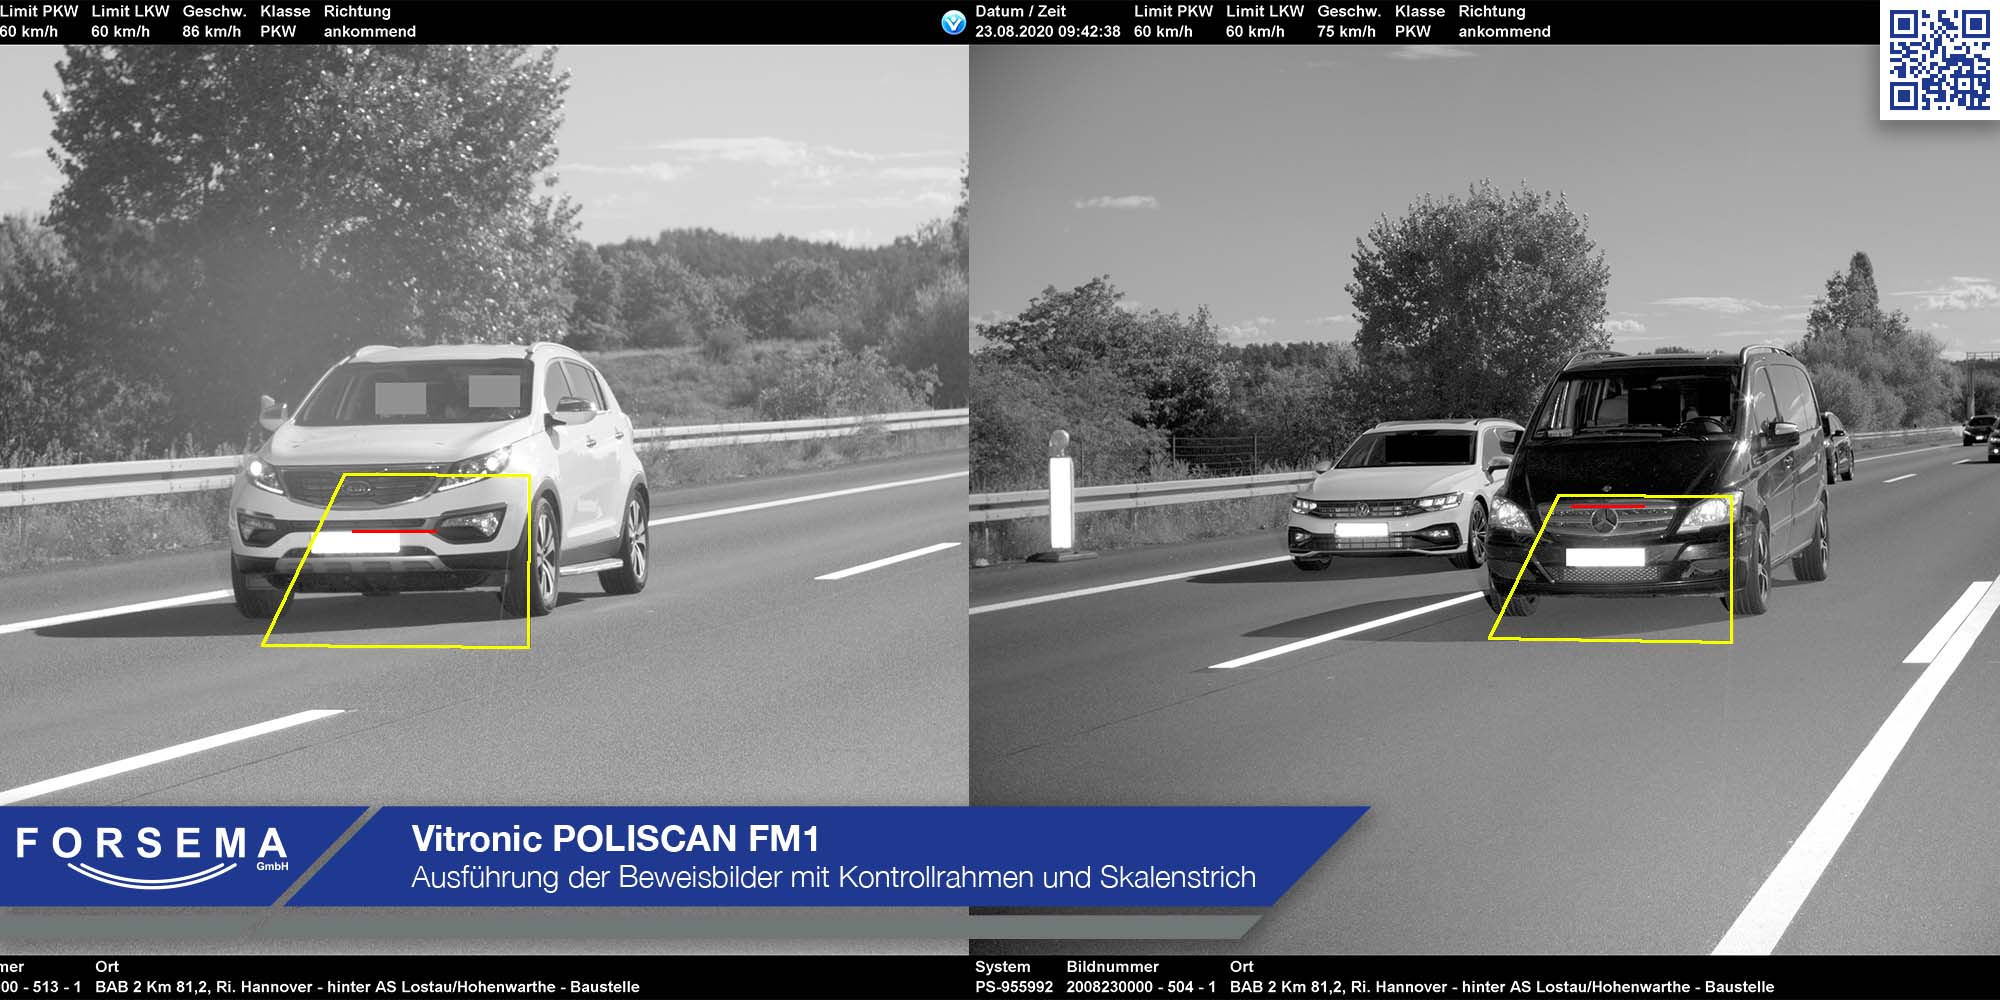 Vitronic POLISCAN FM1 - Ausführung der Beweisbilder mit Kontrollrahmen und Skalenstrich